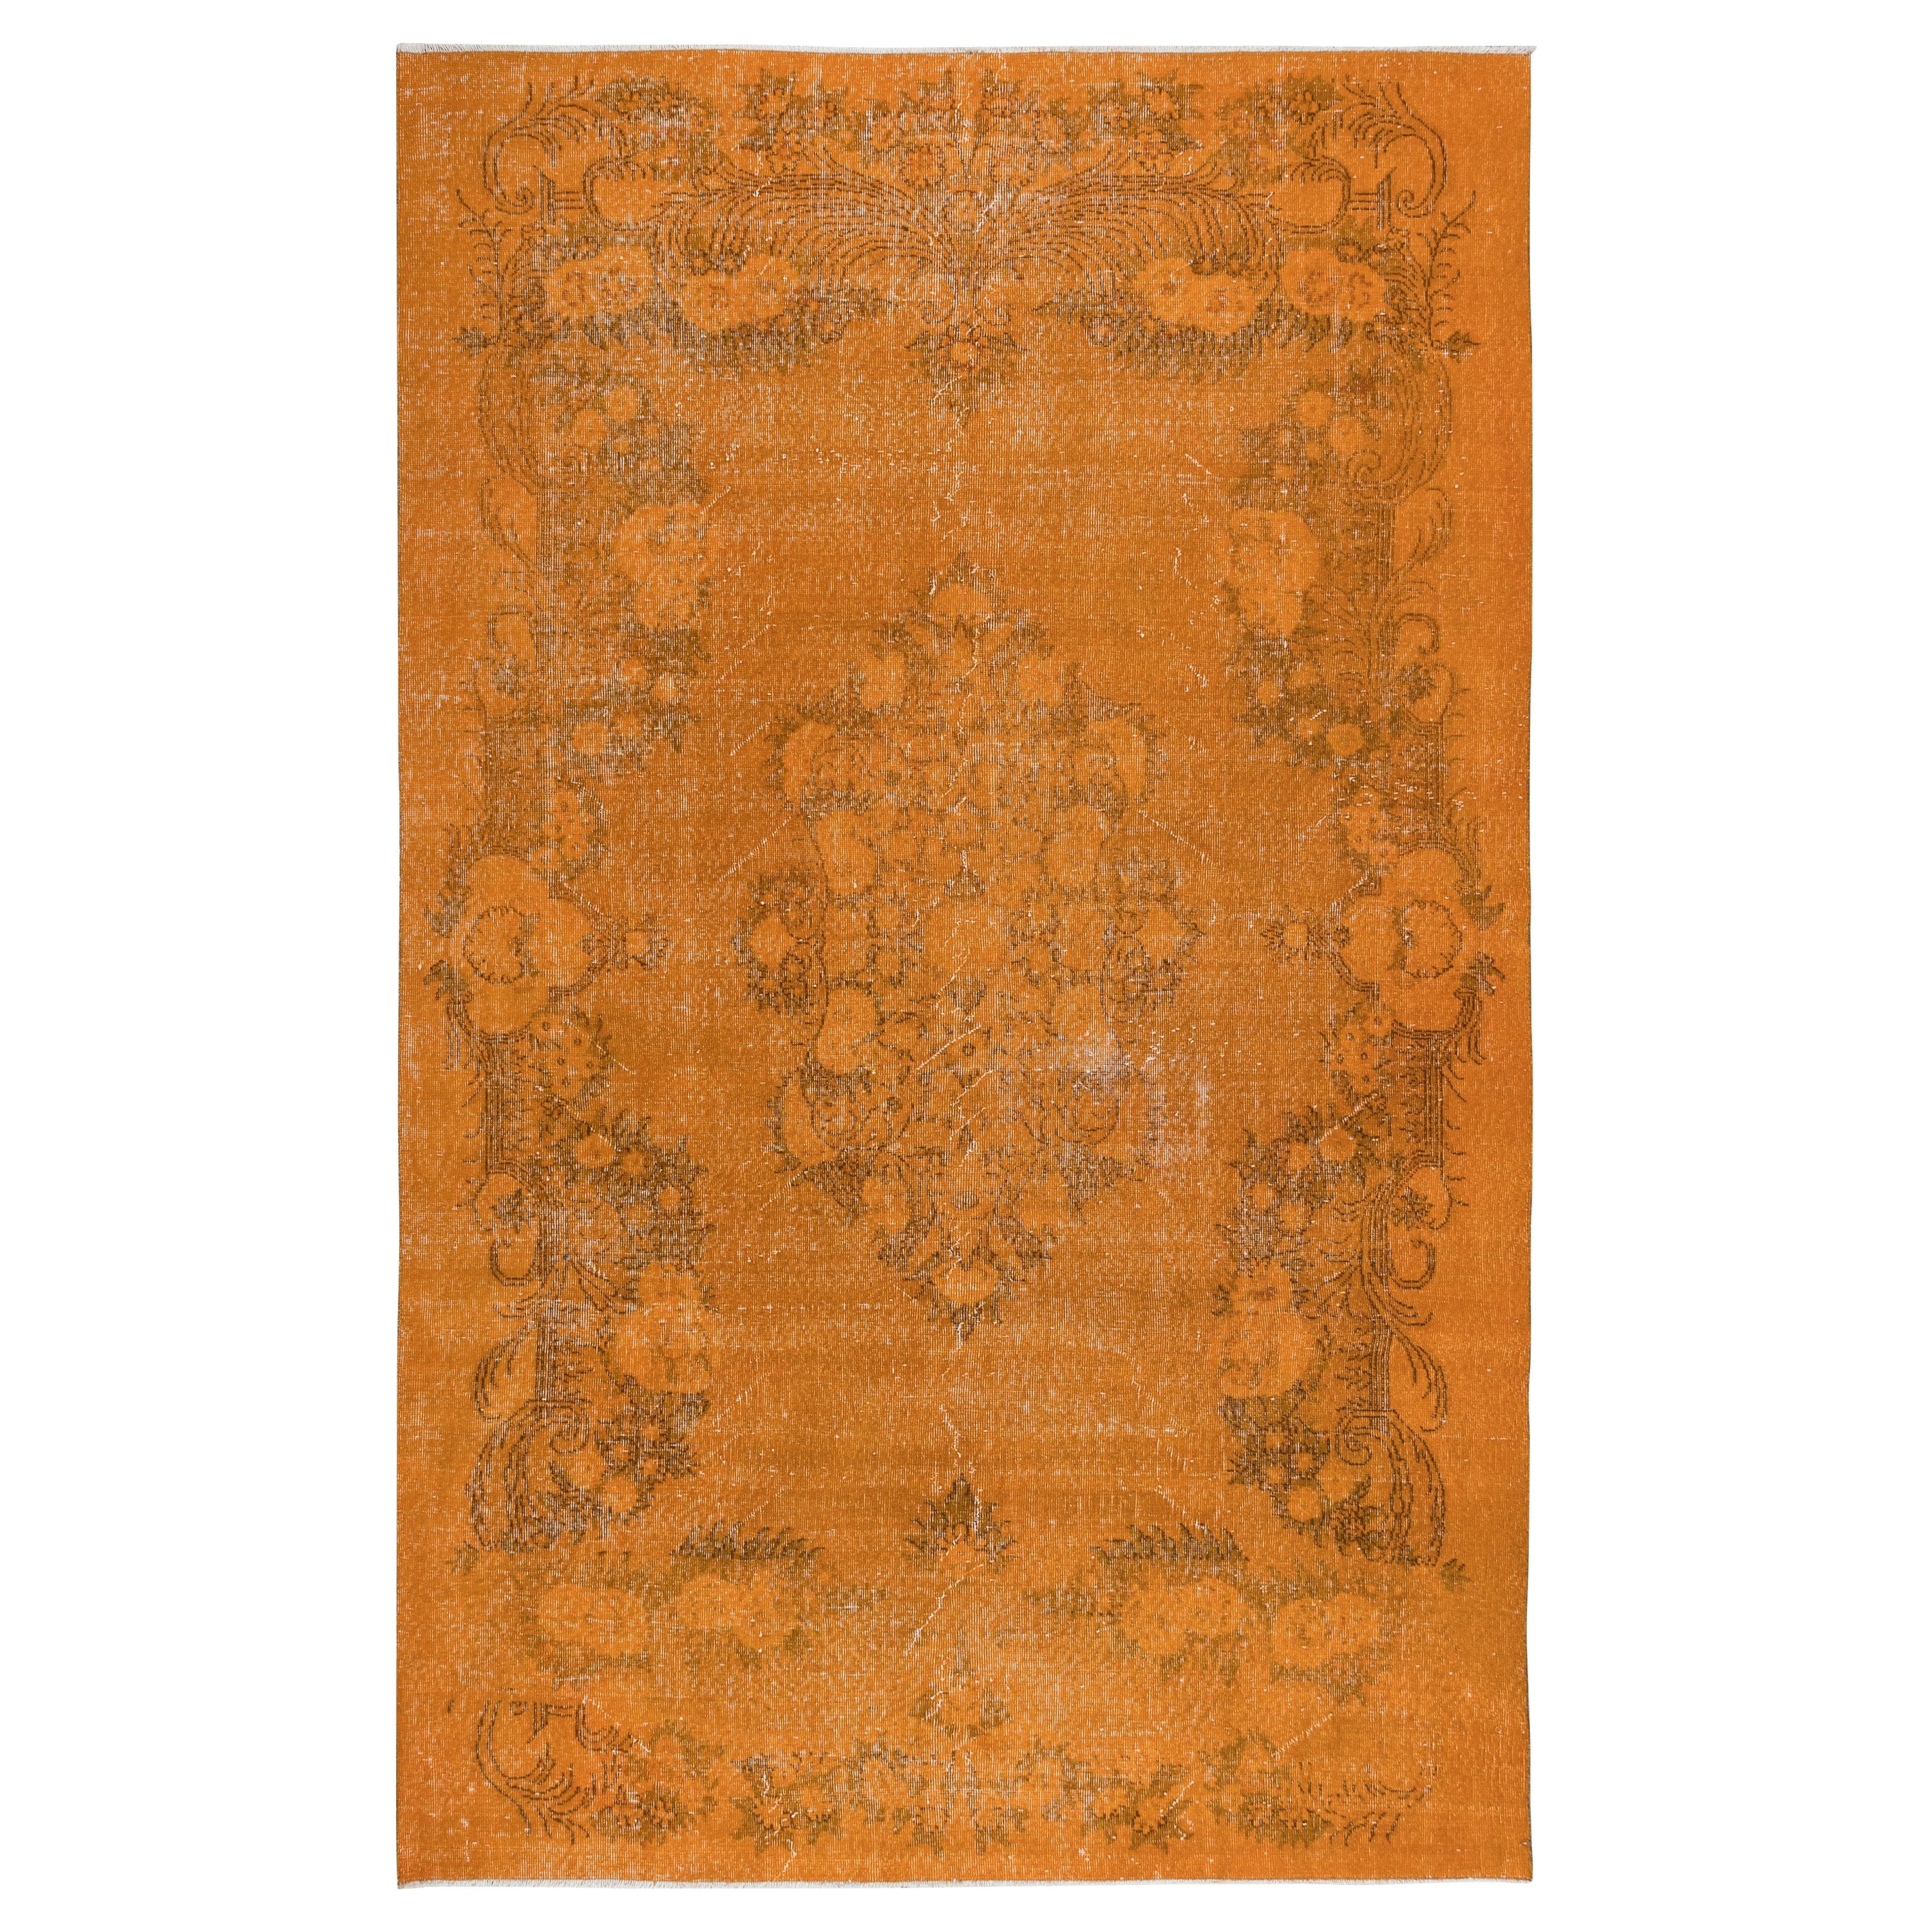 6.8x10.6 Ft Unikat-Teppich aus Wolle in Orange, handgeknüpft in der Türkei